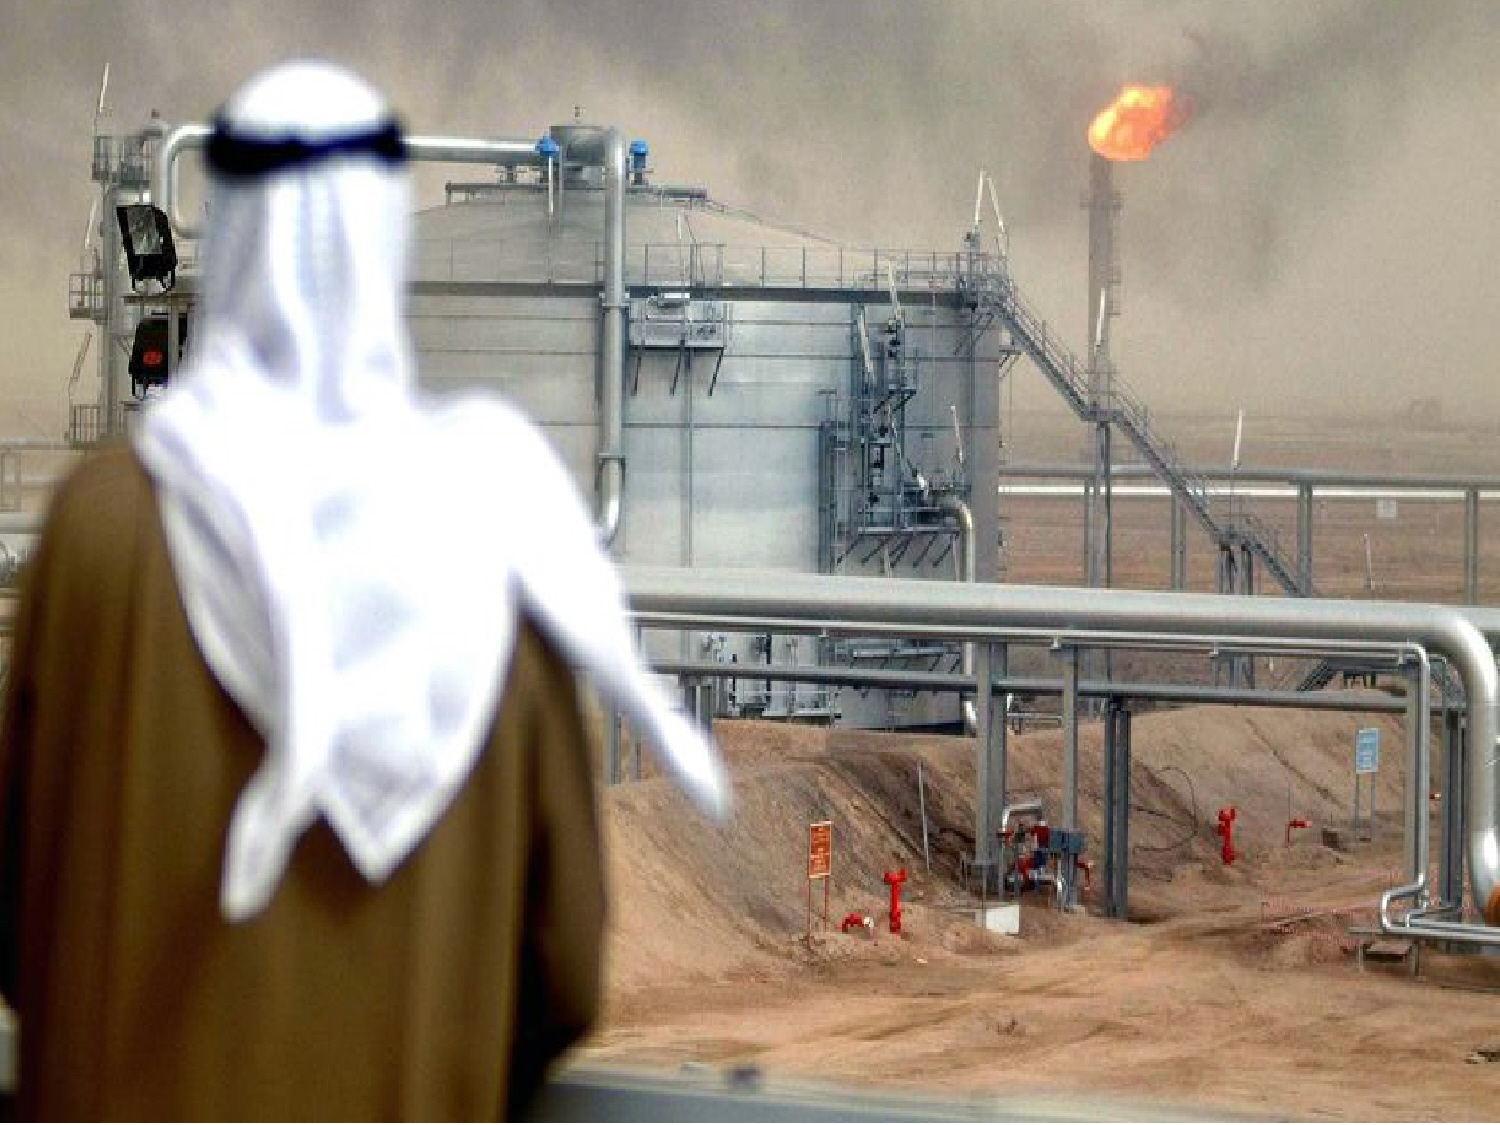 Снижение цен на нефть вынудить Саудовскую Аравию выйти на долговой рынок впервые за 8 лет